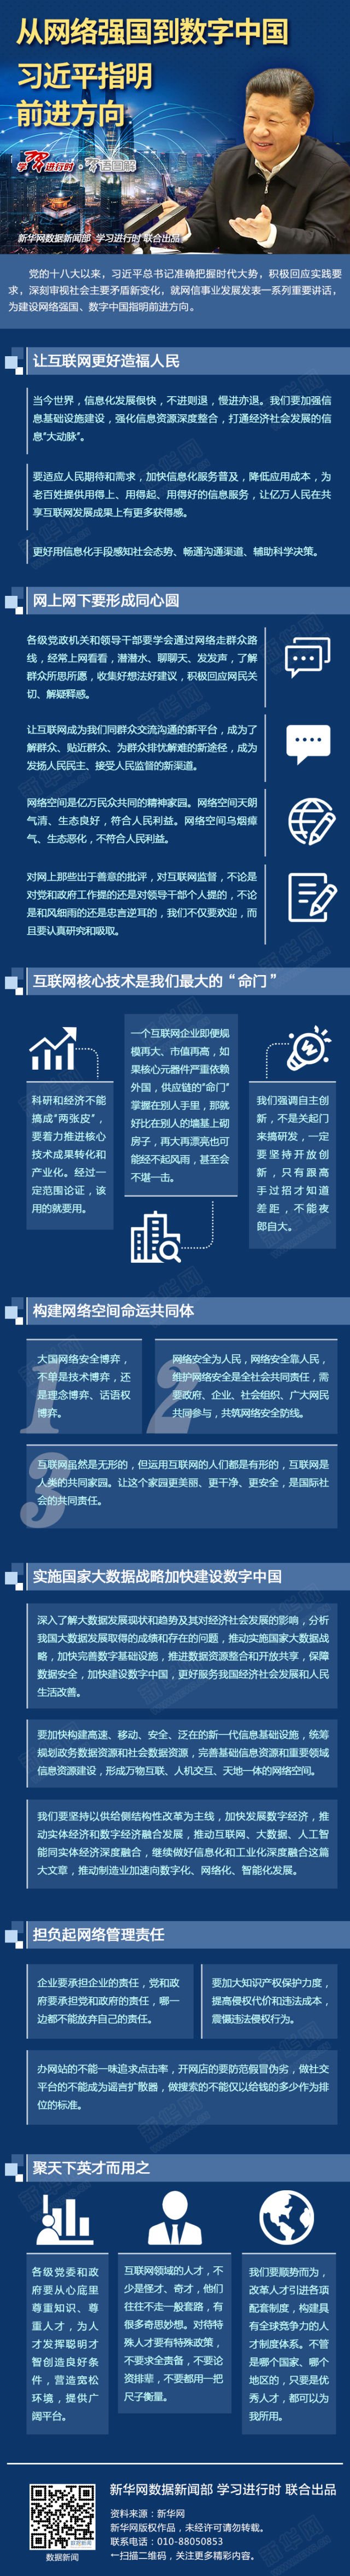 网络强国的中国实践——写在习近平总书记“4·19”重要讲话发表两周年之际